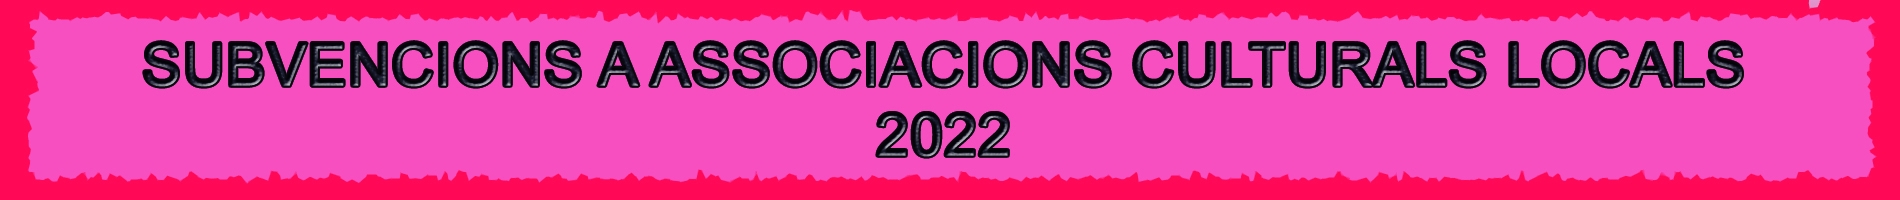 Subvencions a associacions culturals 2022